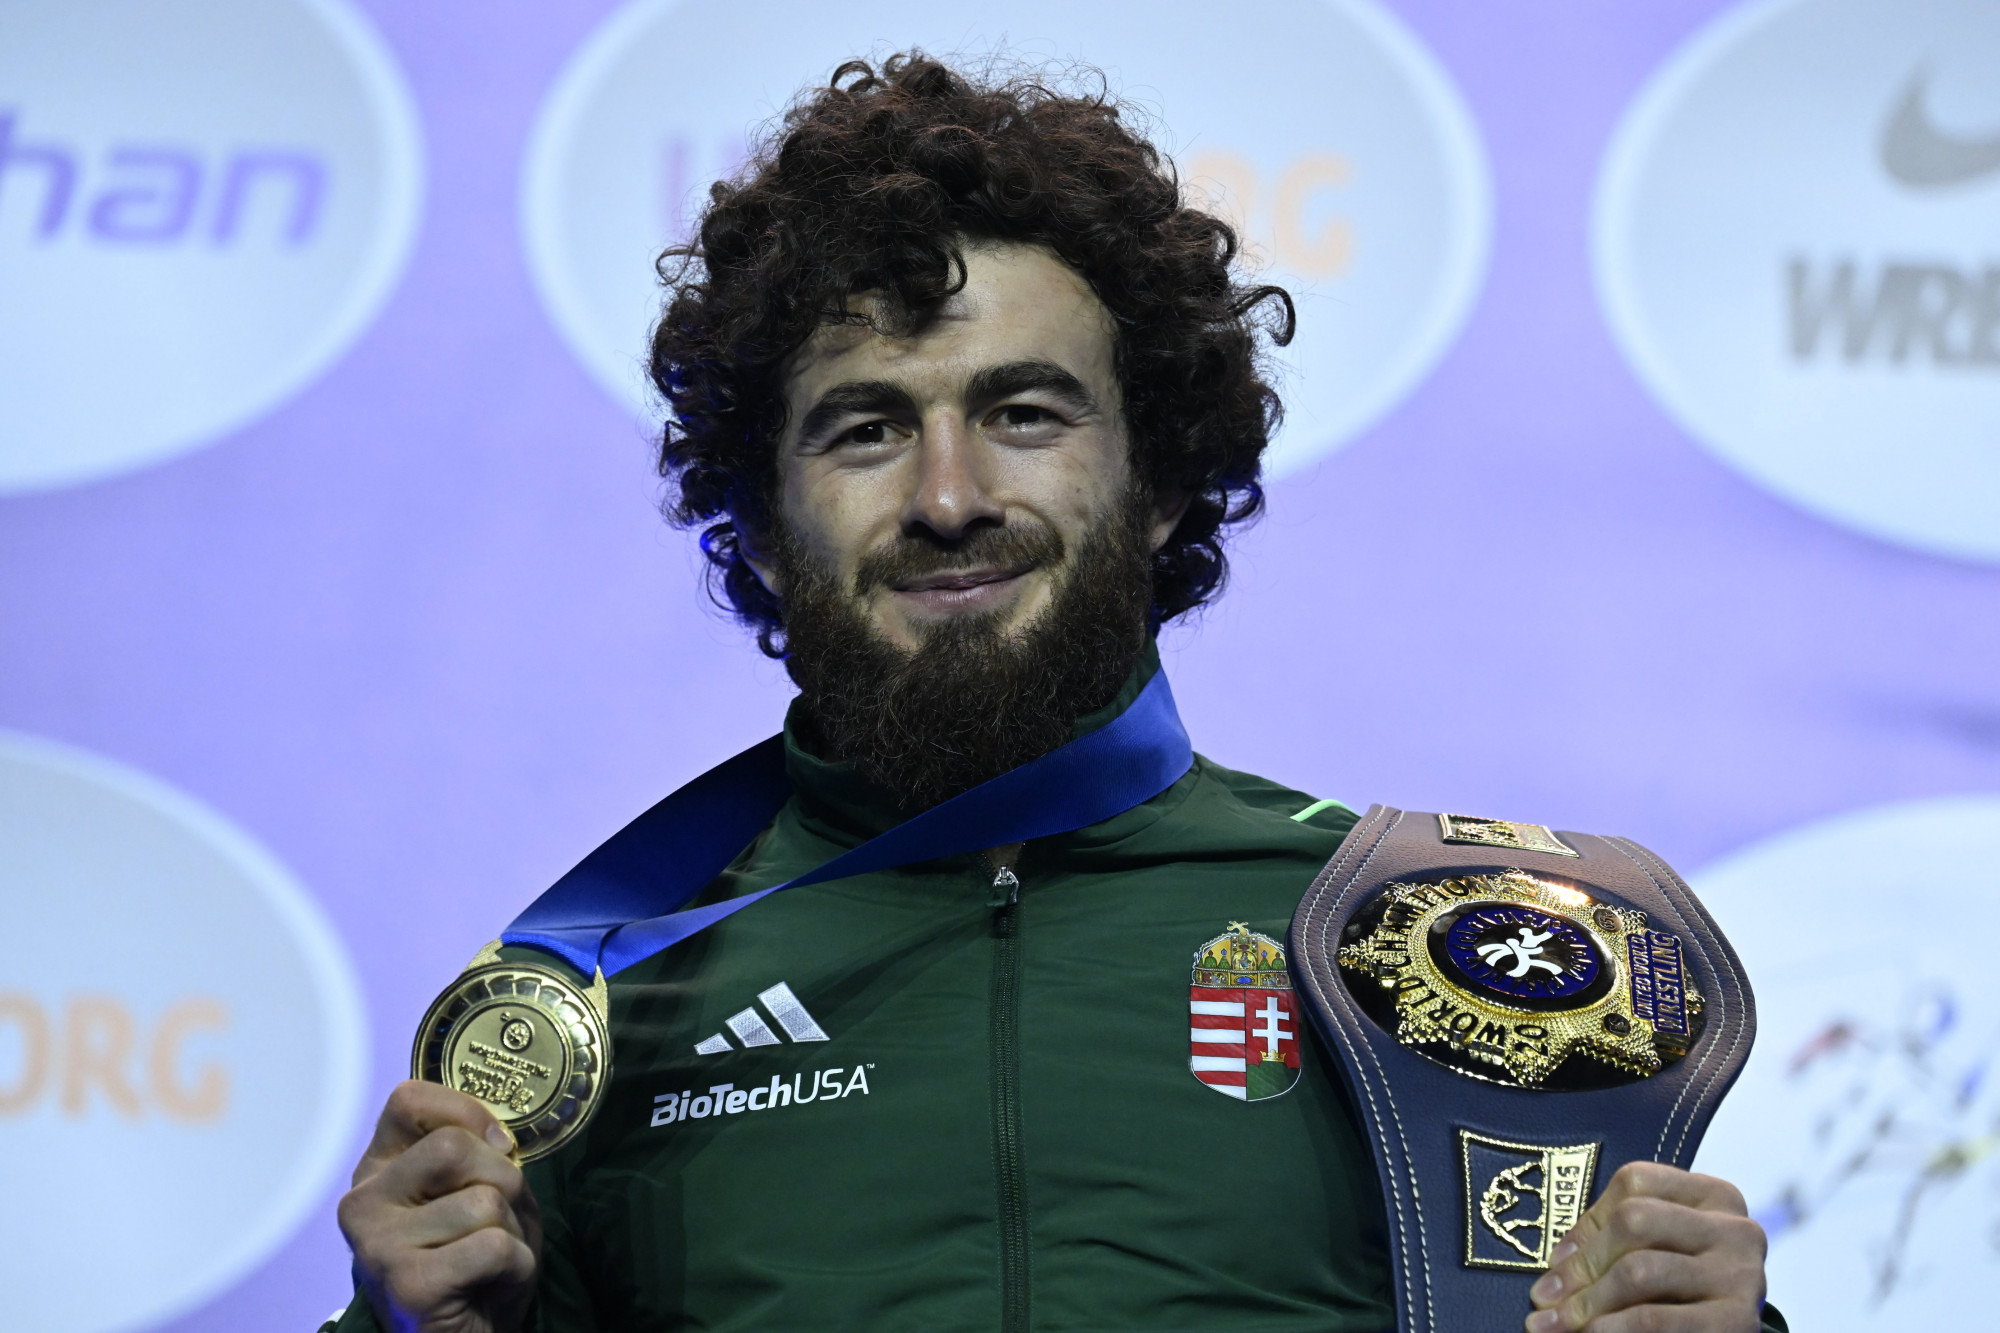 Szép magyar siker: Muszukajev Iszmail 44 év után világbajnoki aranyat nyert szabadfogásban